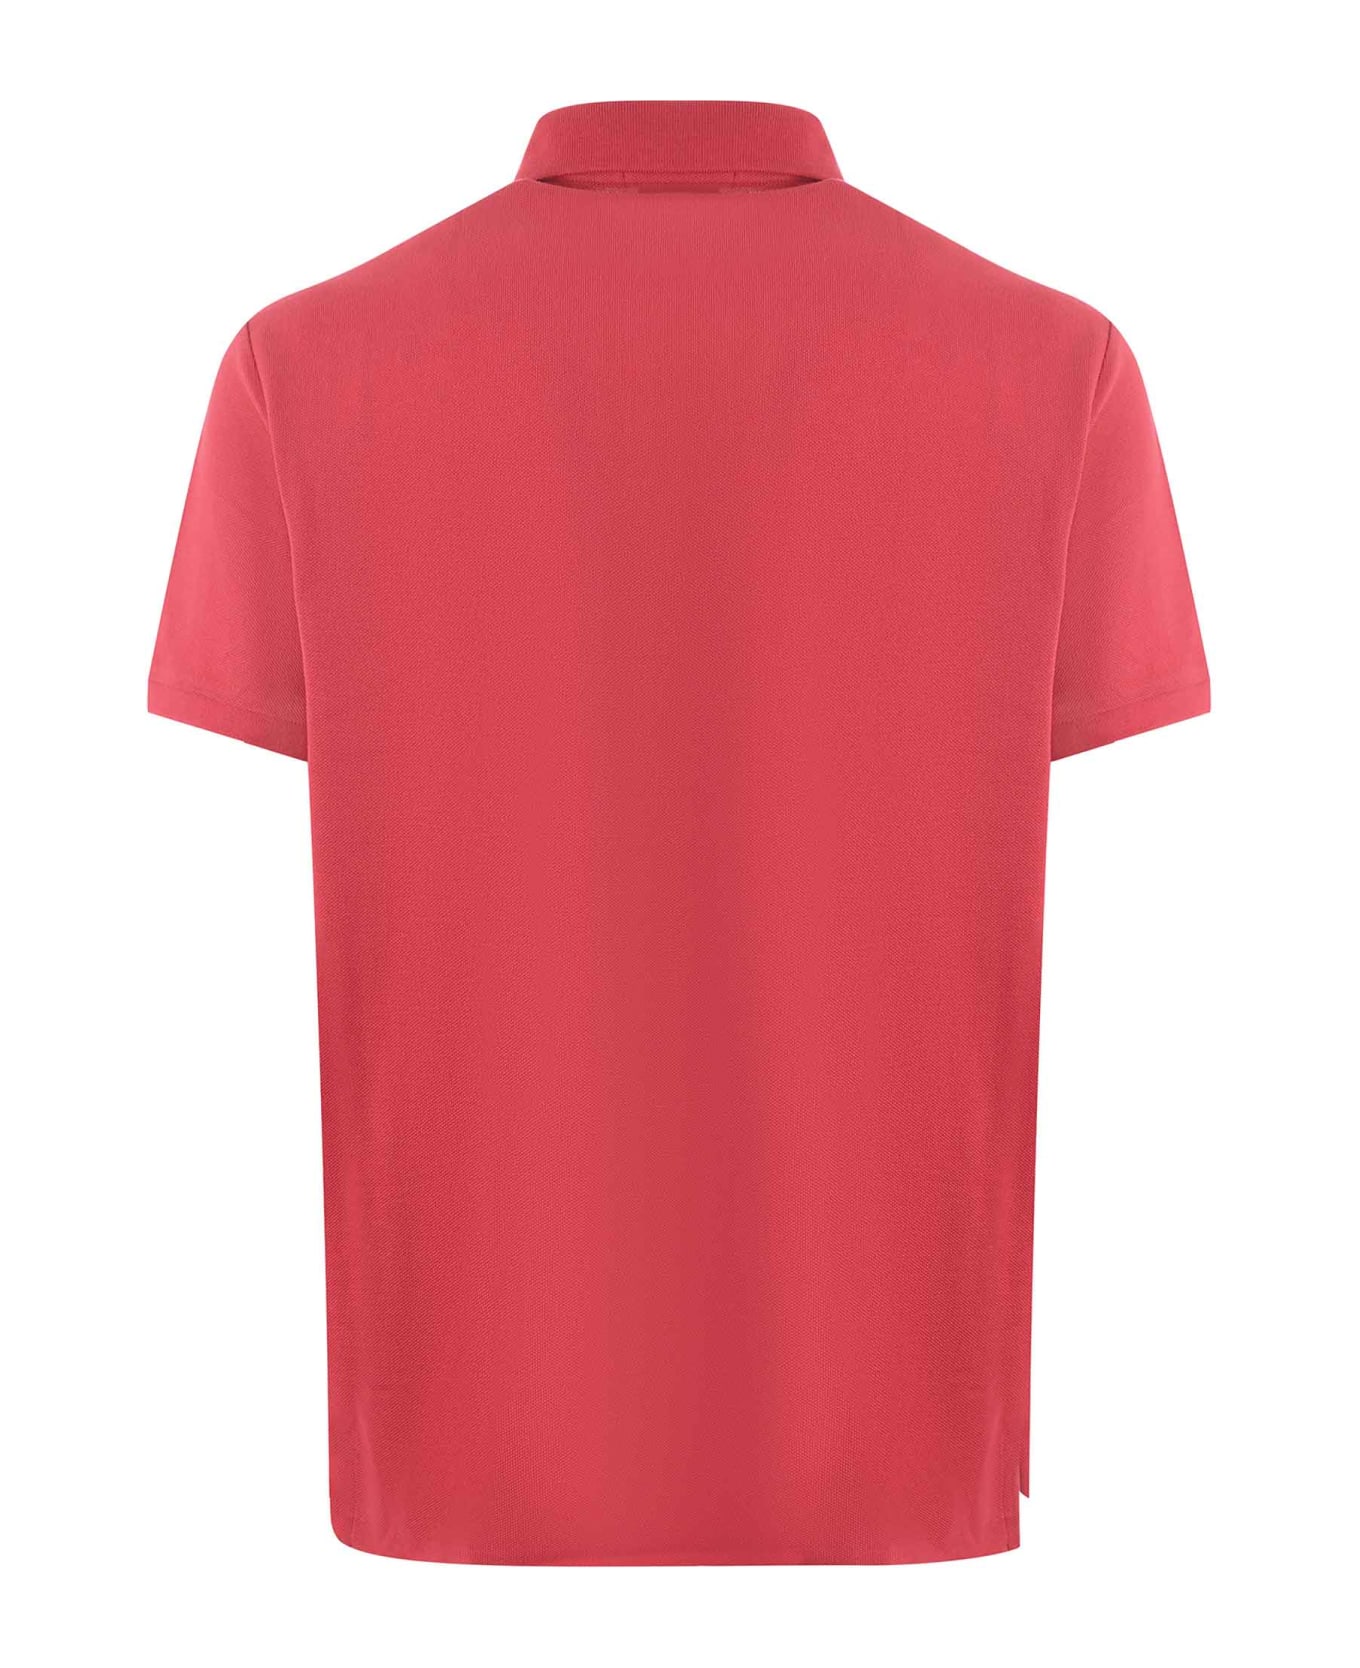 Polo Ralph Lauren "polo Ralph Lauren" Polo Shirt - Rosso corallo ポロシャツ